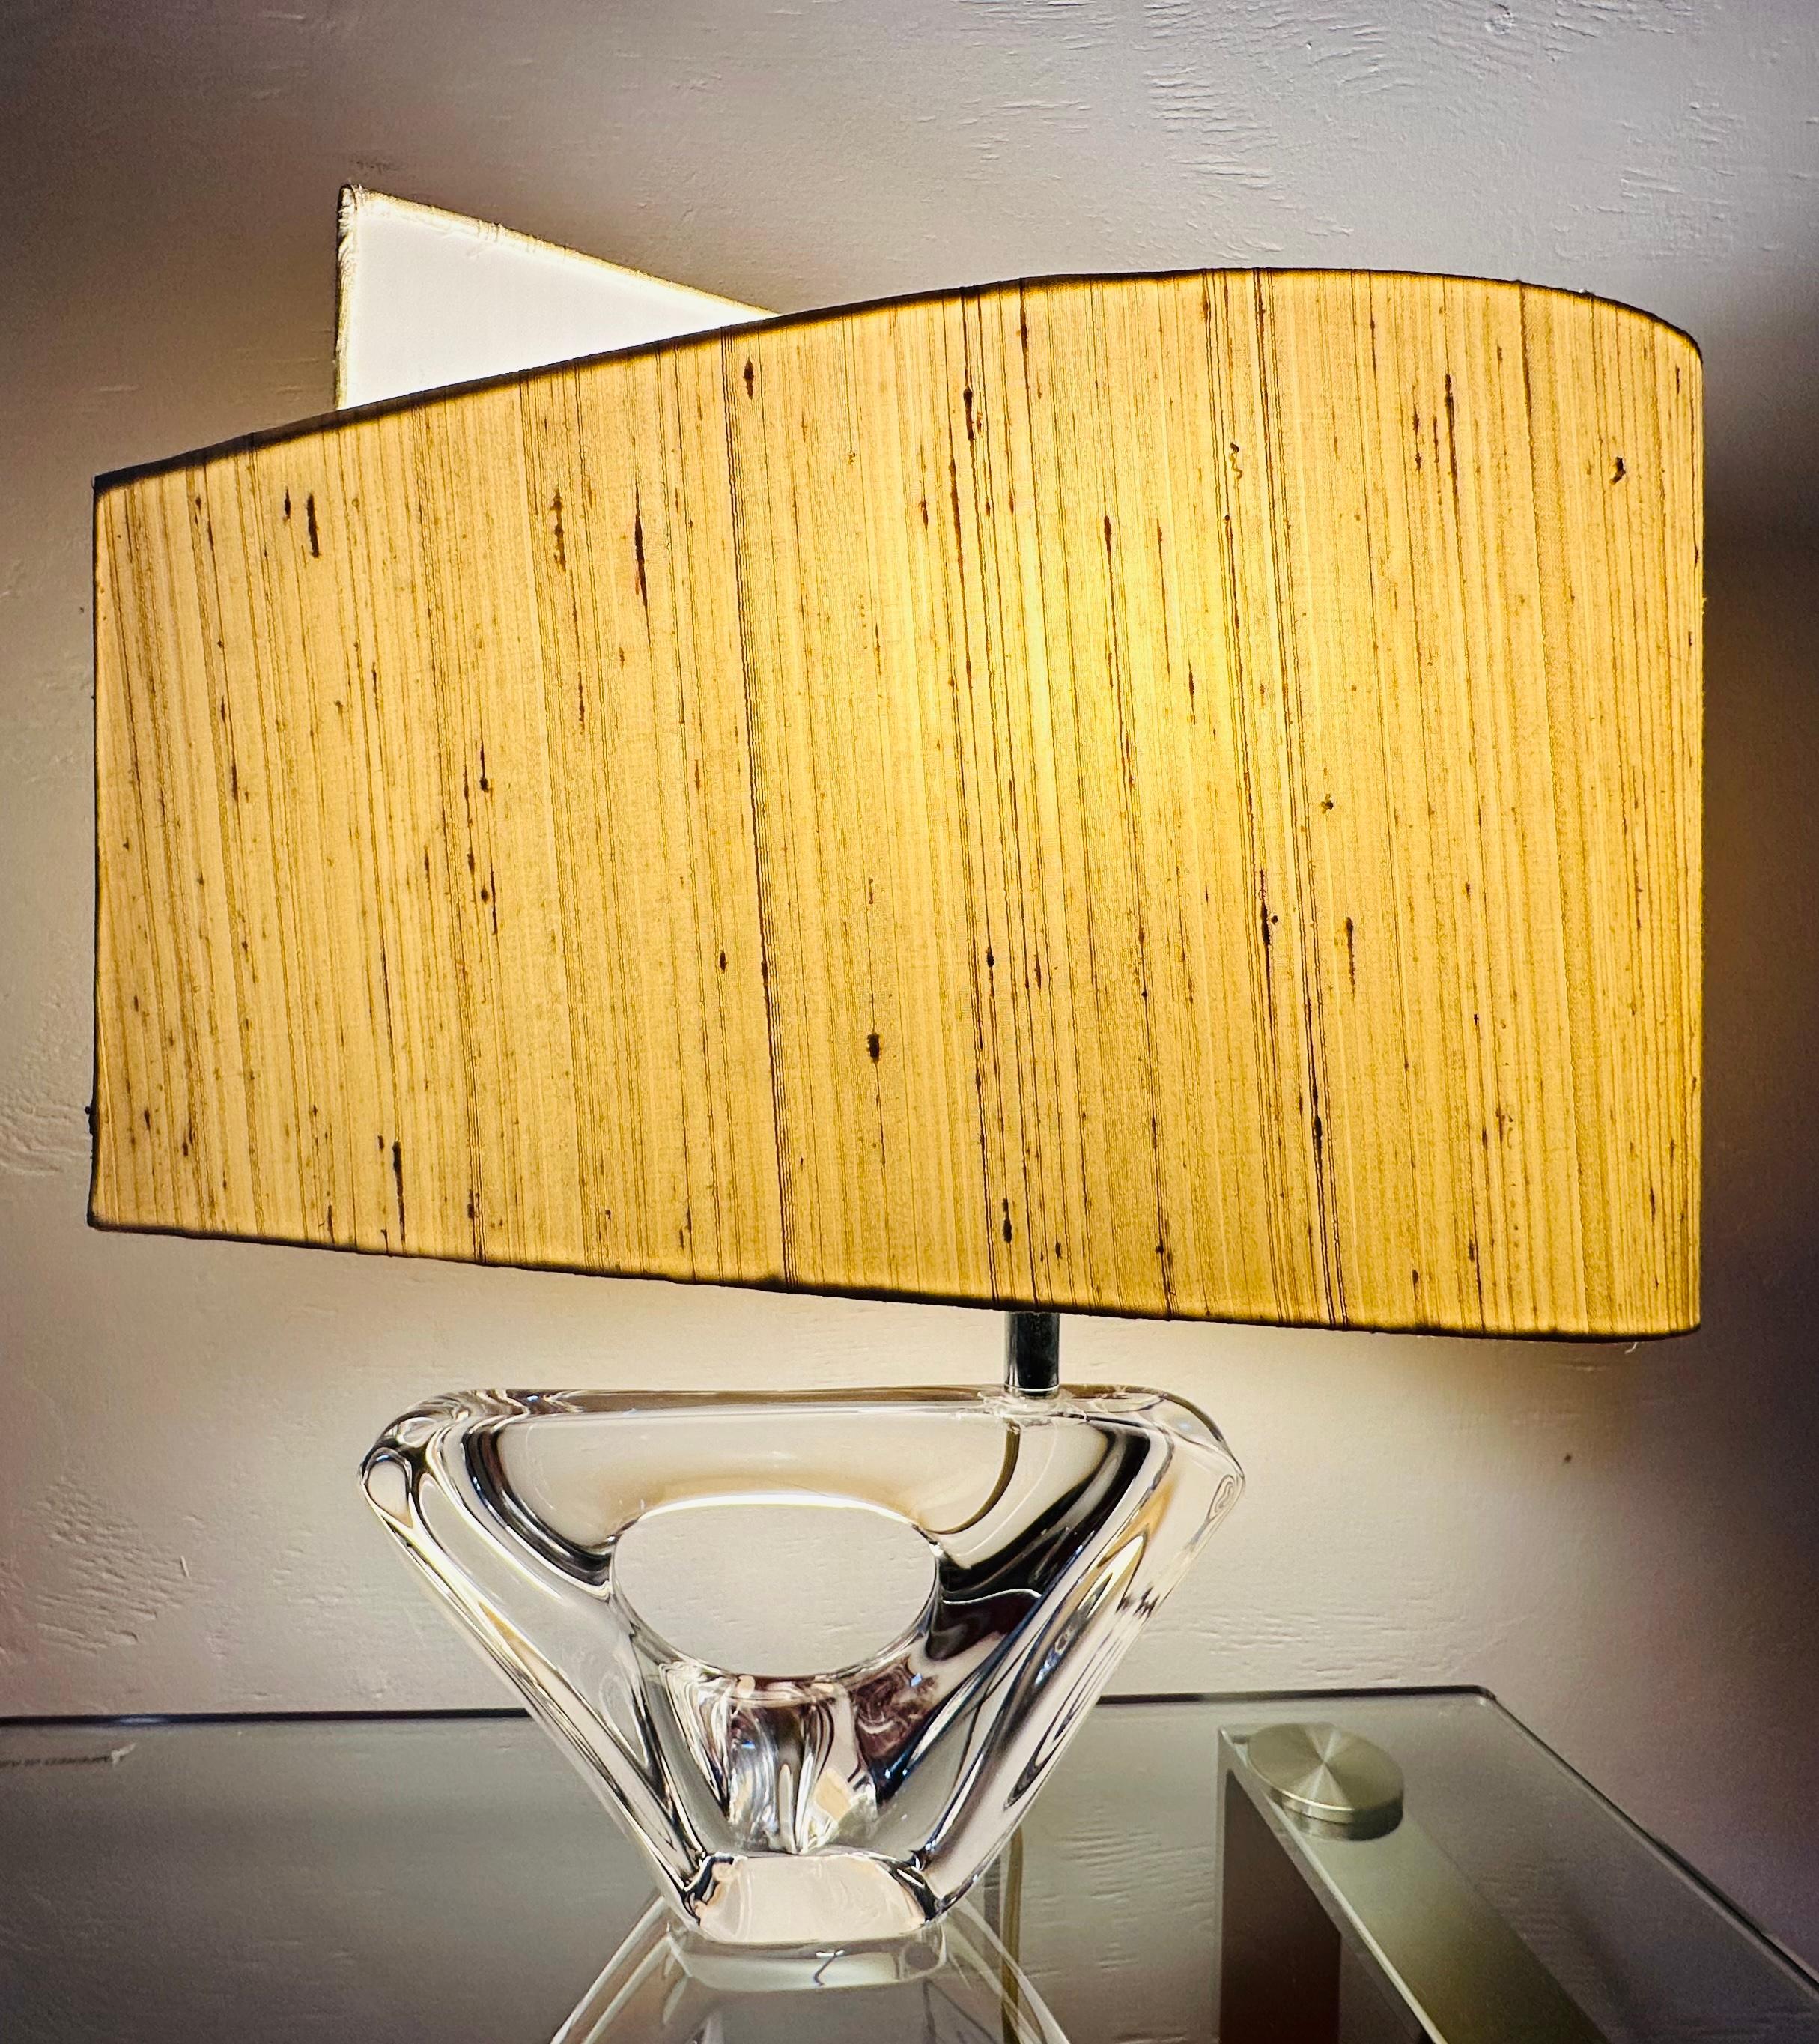 Une belle et rare lampe de table en forme de voilier Daum de France incluant son abat-jour en lin d'origine en forme de voile.  La marque du fabricant est gravée en bas d'un côté.  

Une pièce unique et difficile à se procurer avec l'abat-jour. 